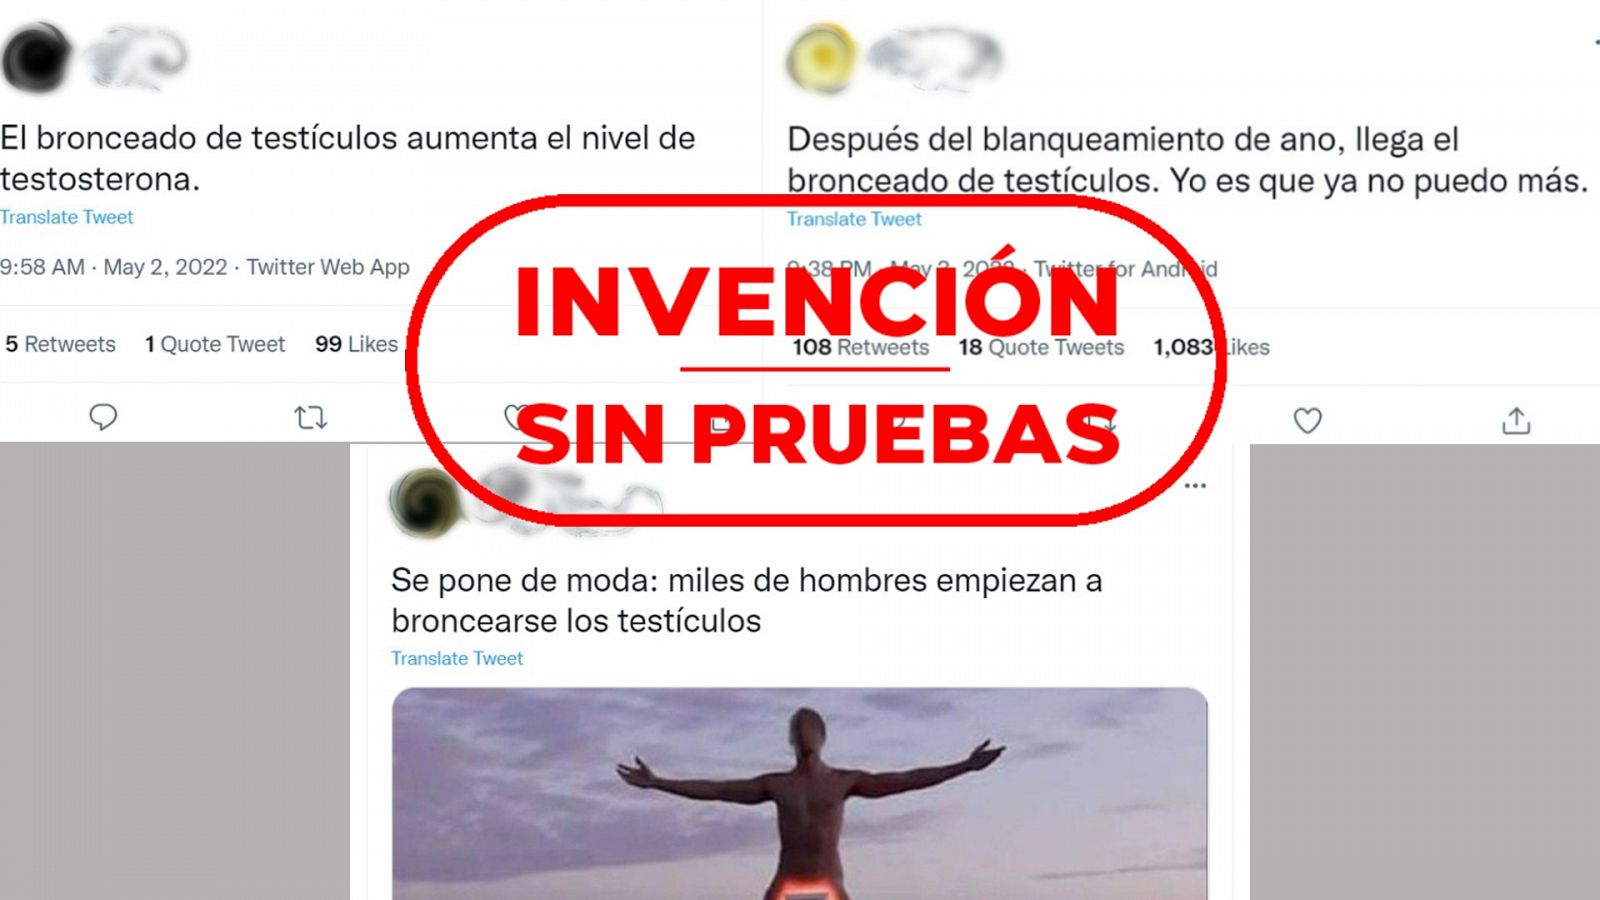 Tres mensajes de Twitter que hablan sobre el bronceado de testículos, con el sello rojo de Invención Sin Pruebas de VerificaRTVE